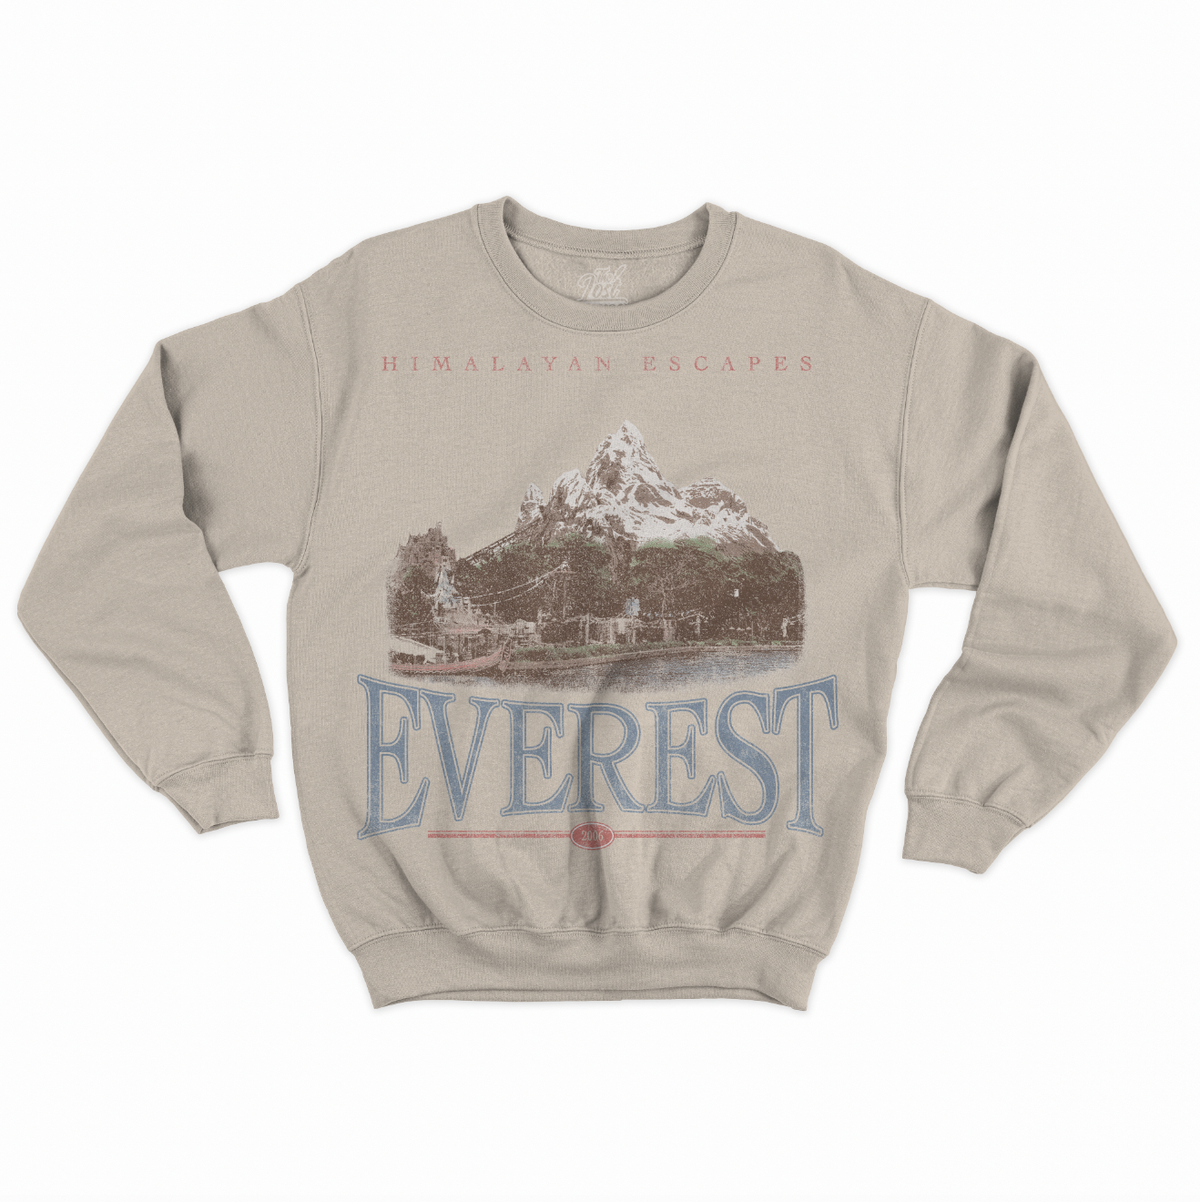 Himalayan Escapes Sweatshirt